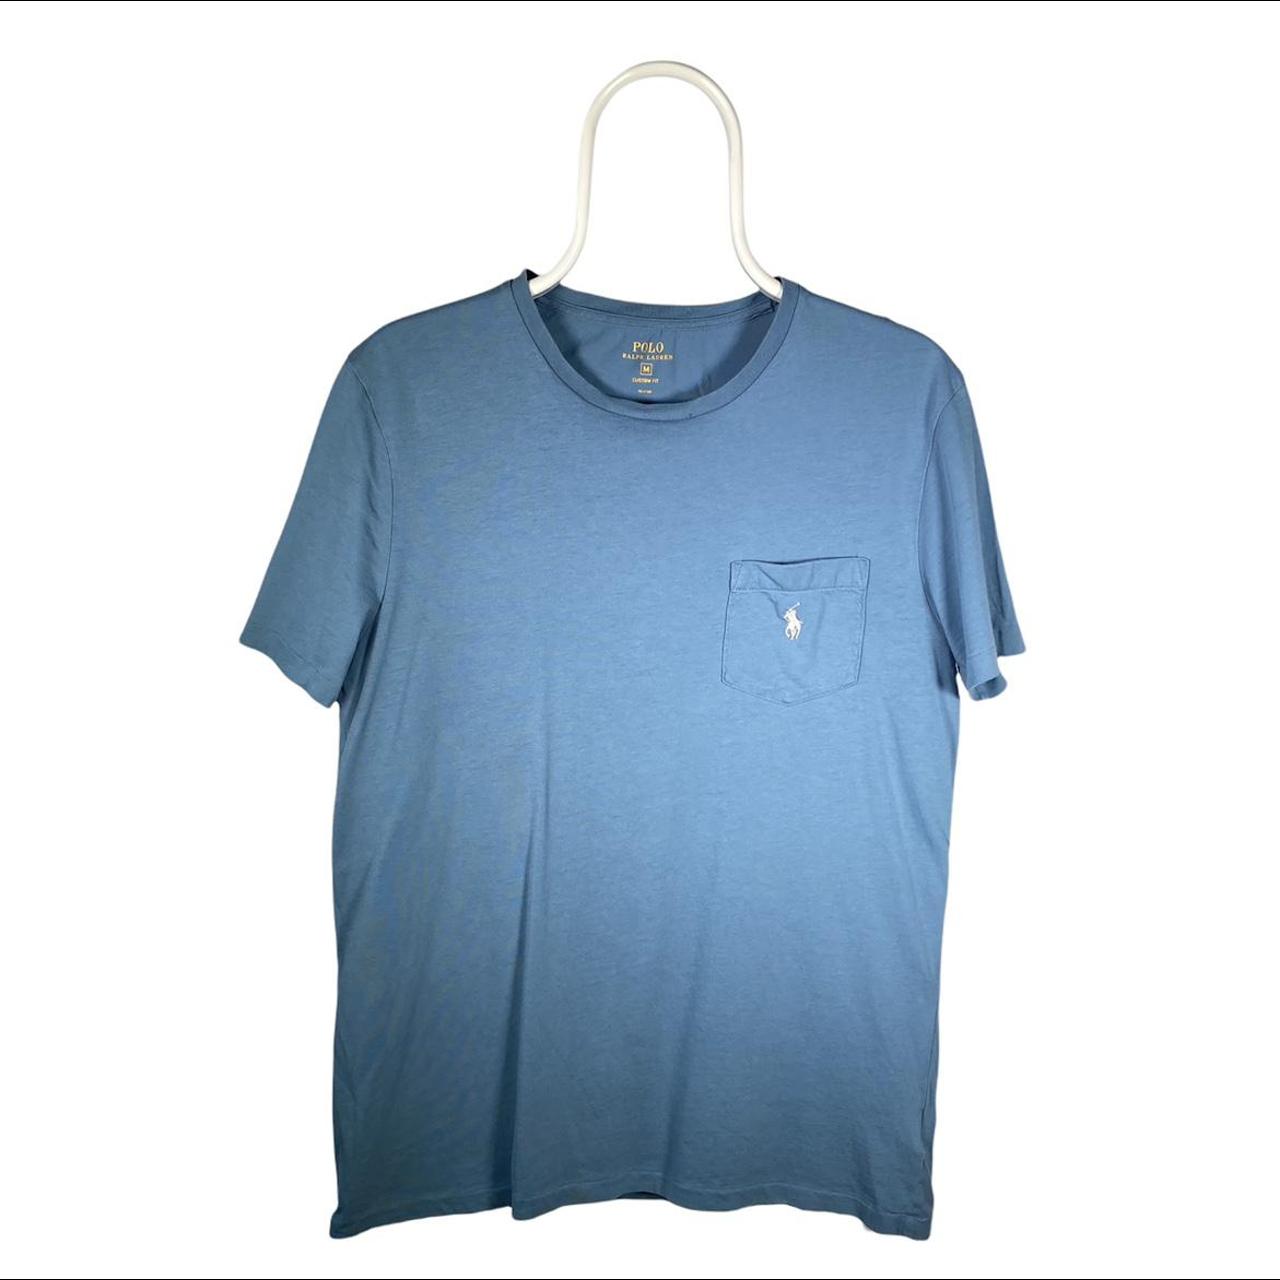 Polo Ralph Lauren Men's Blue T-shirt (2)